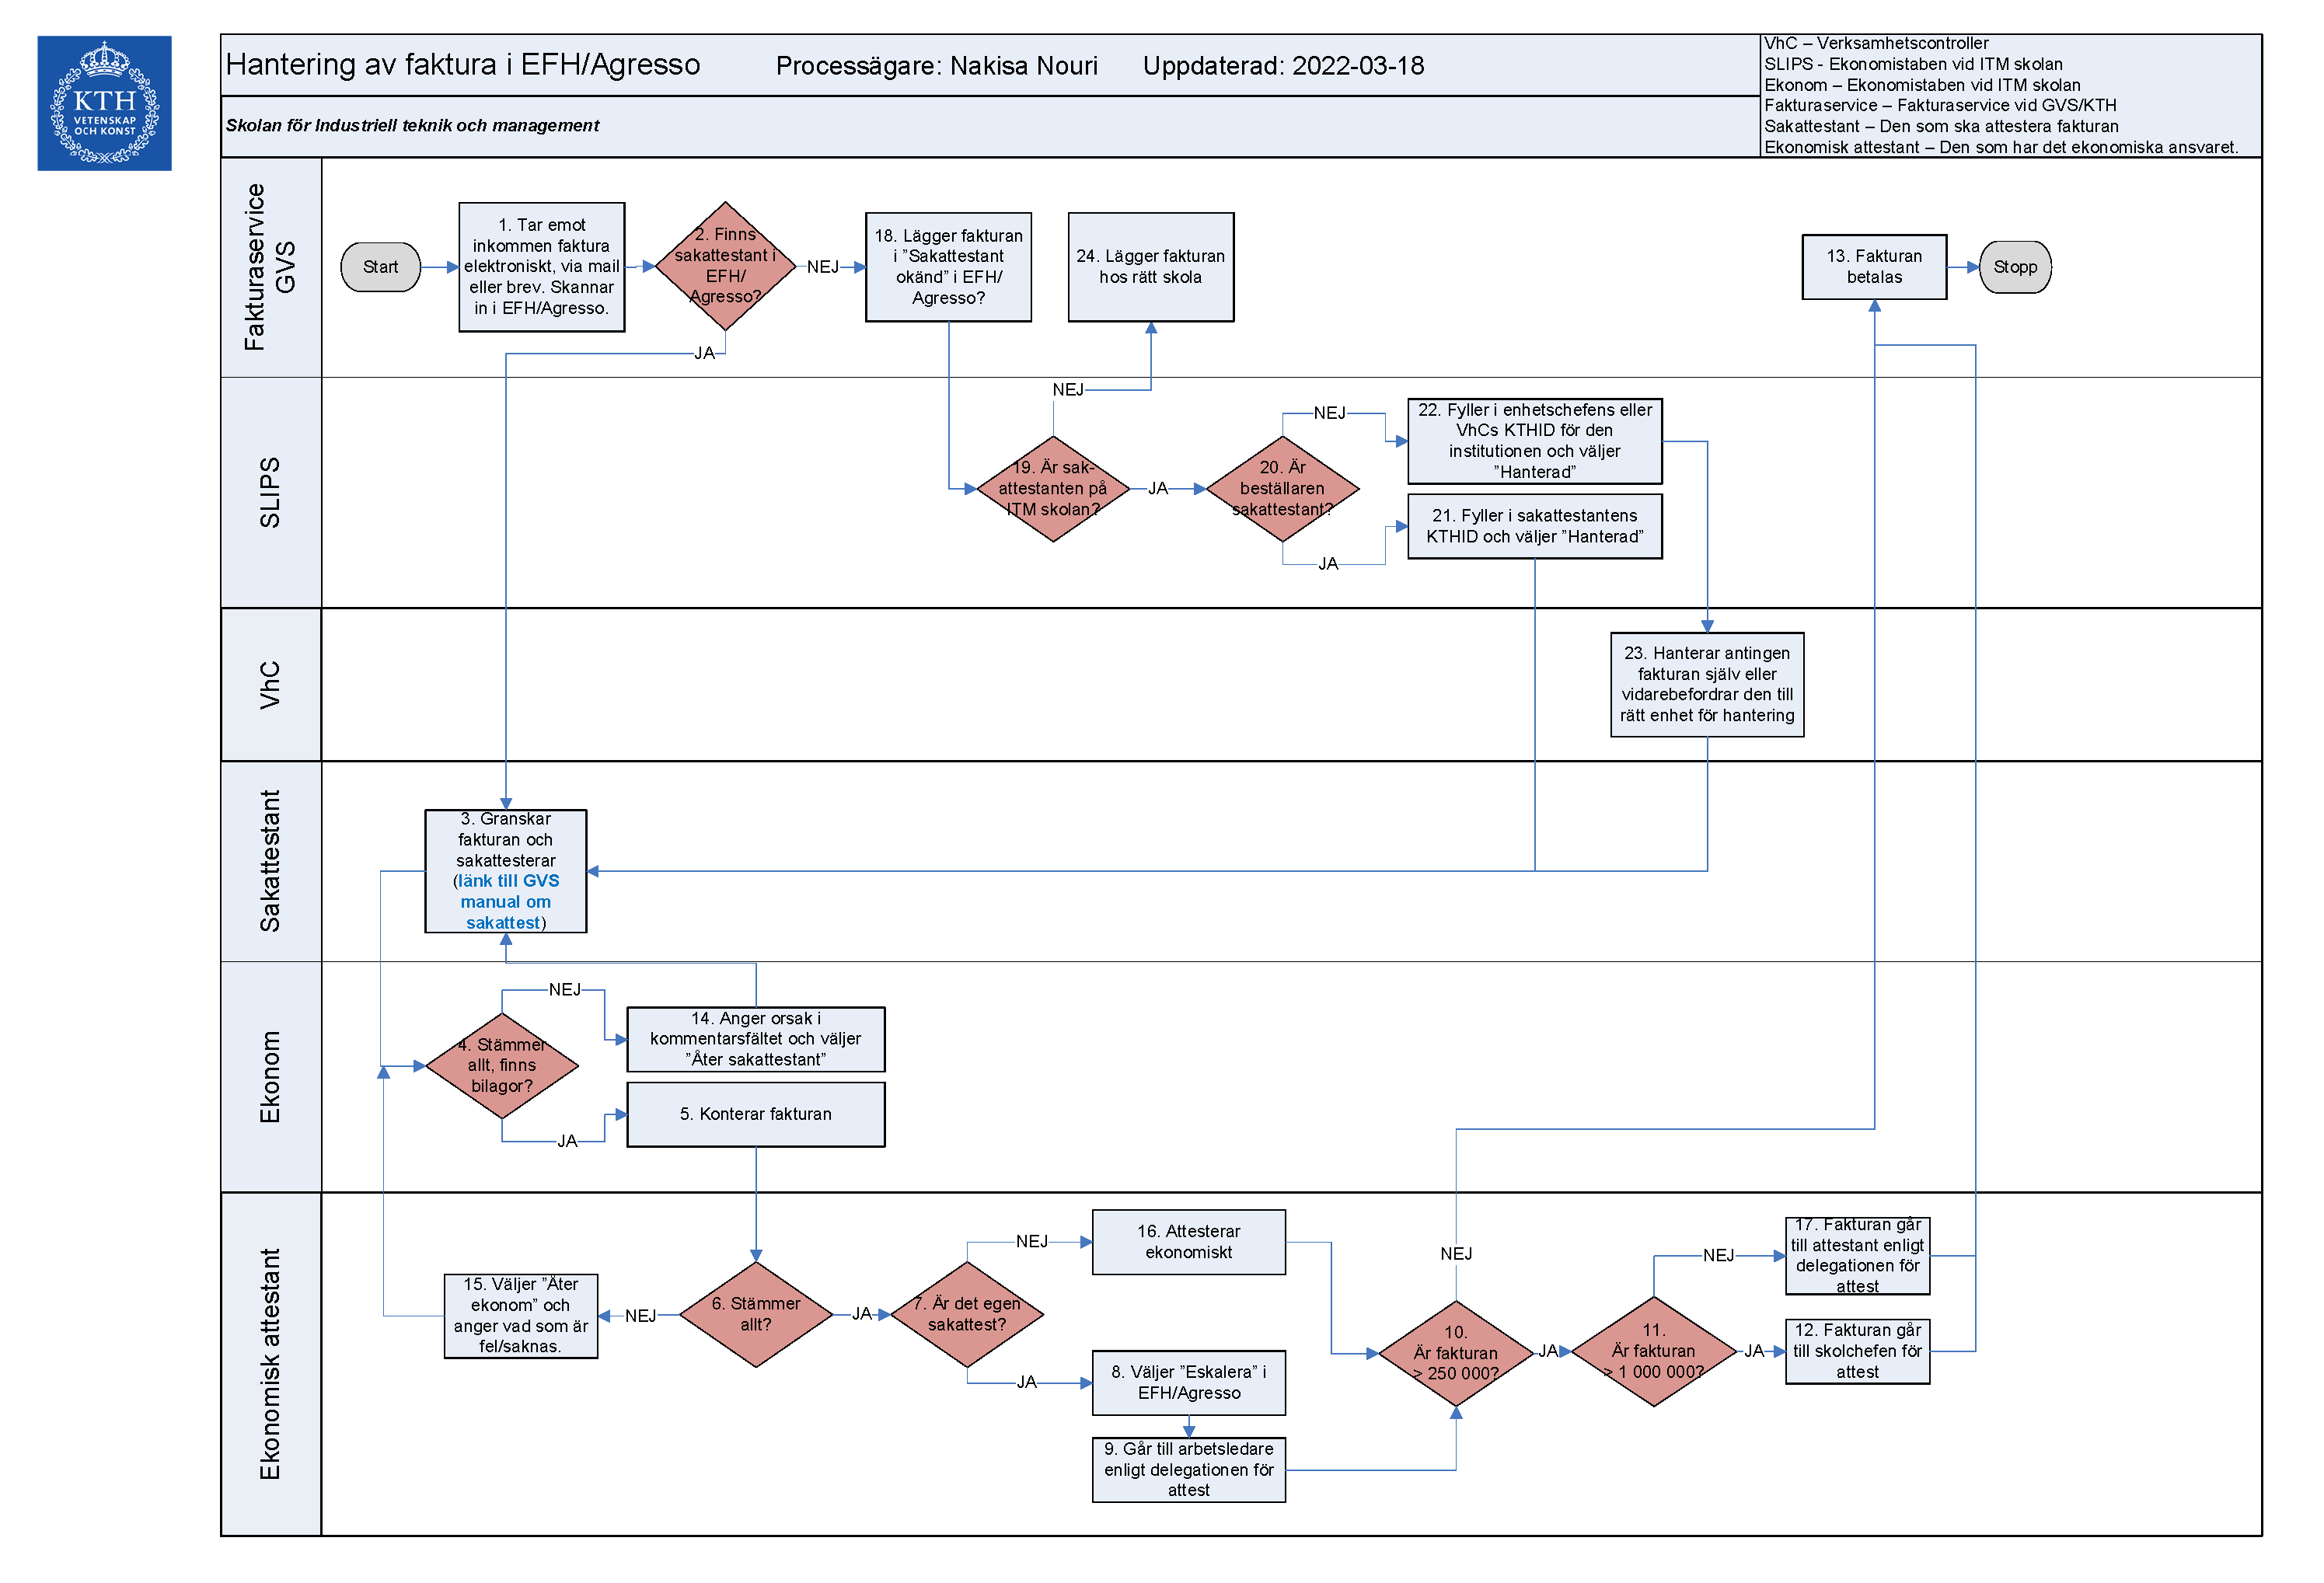 Processkarta för fakturahantering i EFH. Återges i text på den här sidan.